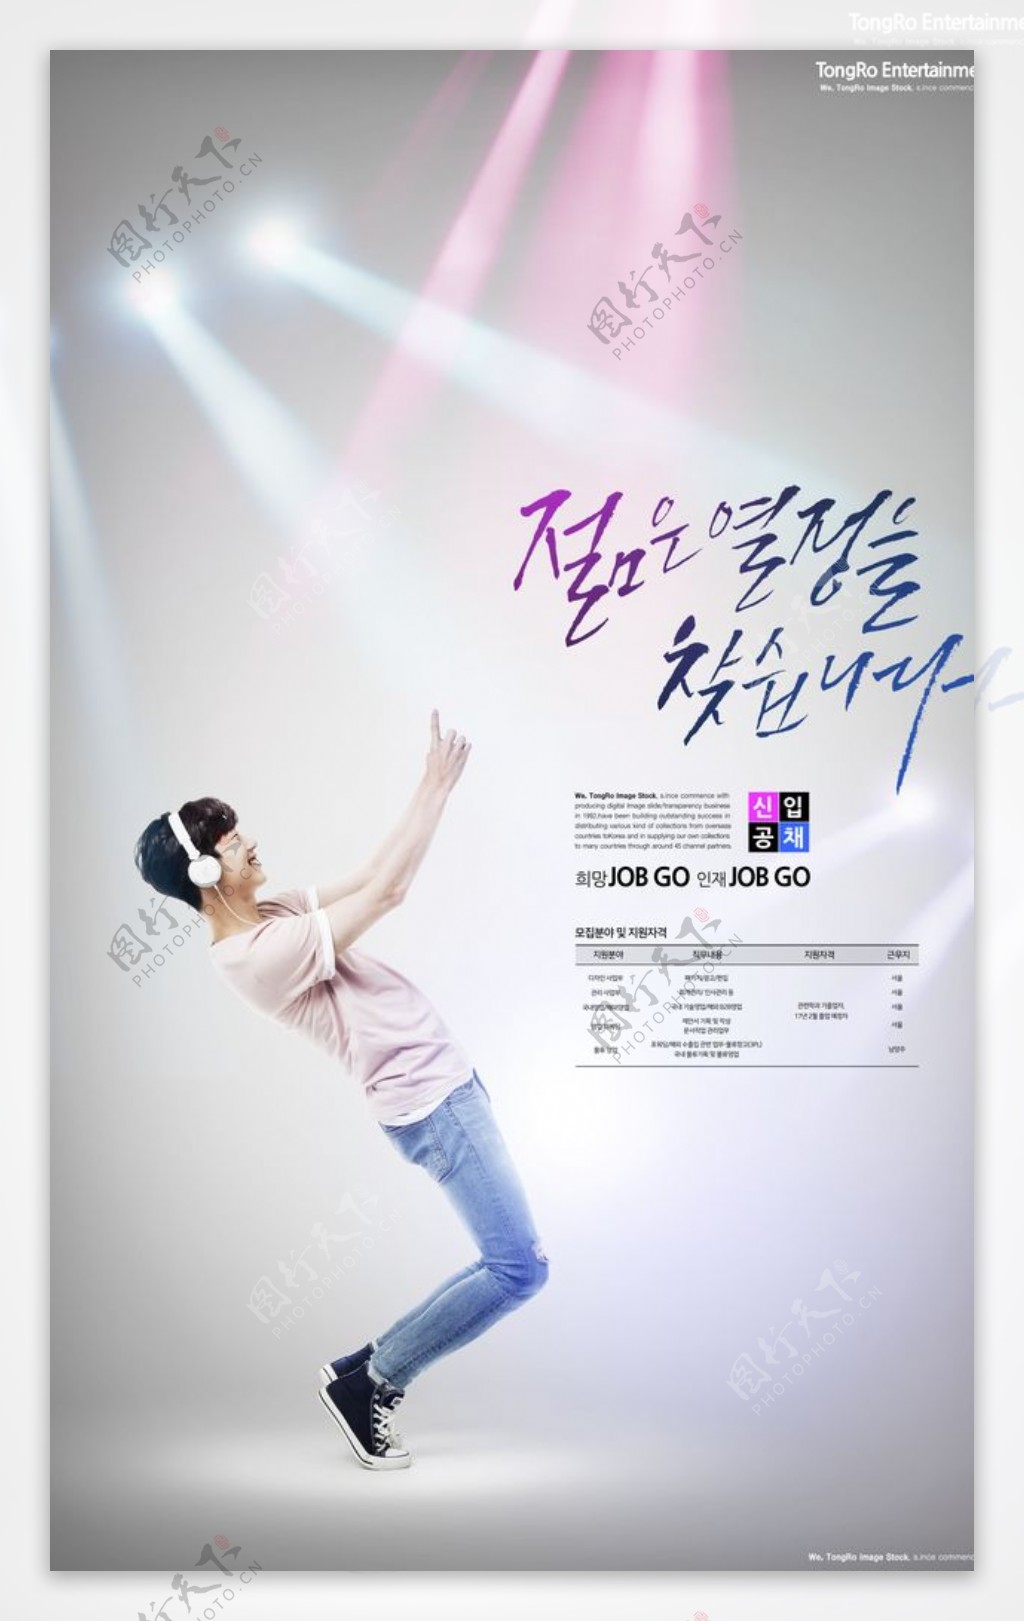 韩式民族风海报设计图片